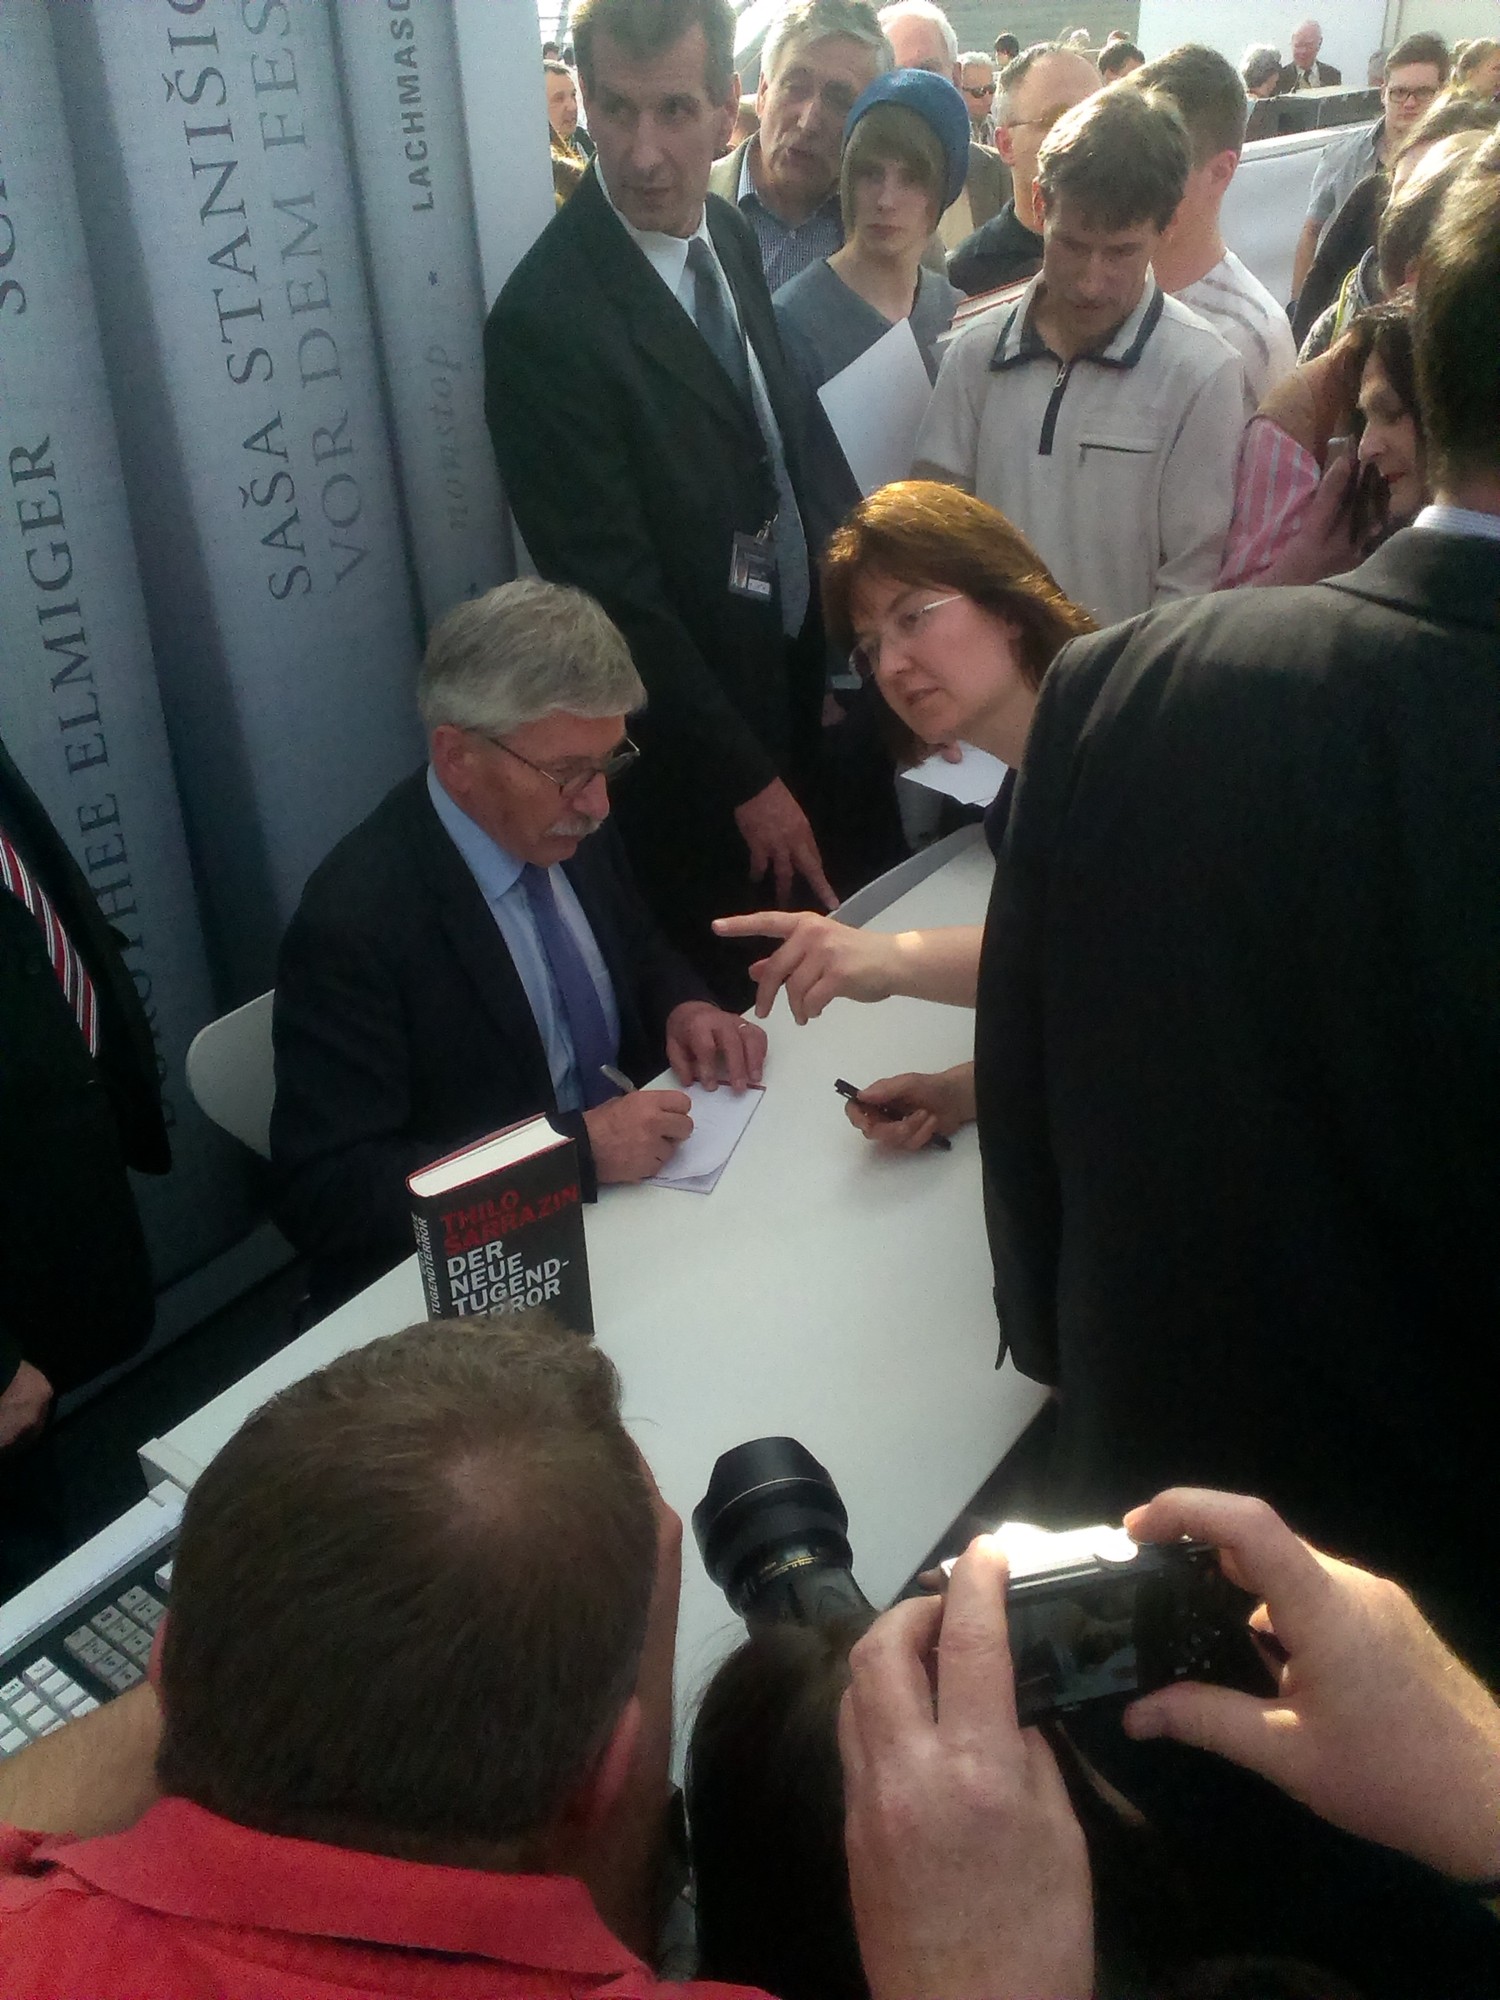 Umlagert: Thilo Sarrazin signiert auf der Leipziger Buchmesse. Foto: Detlef M. Plaisier